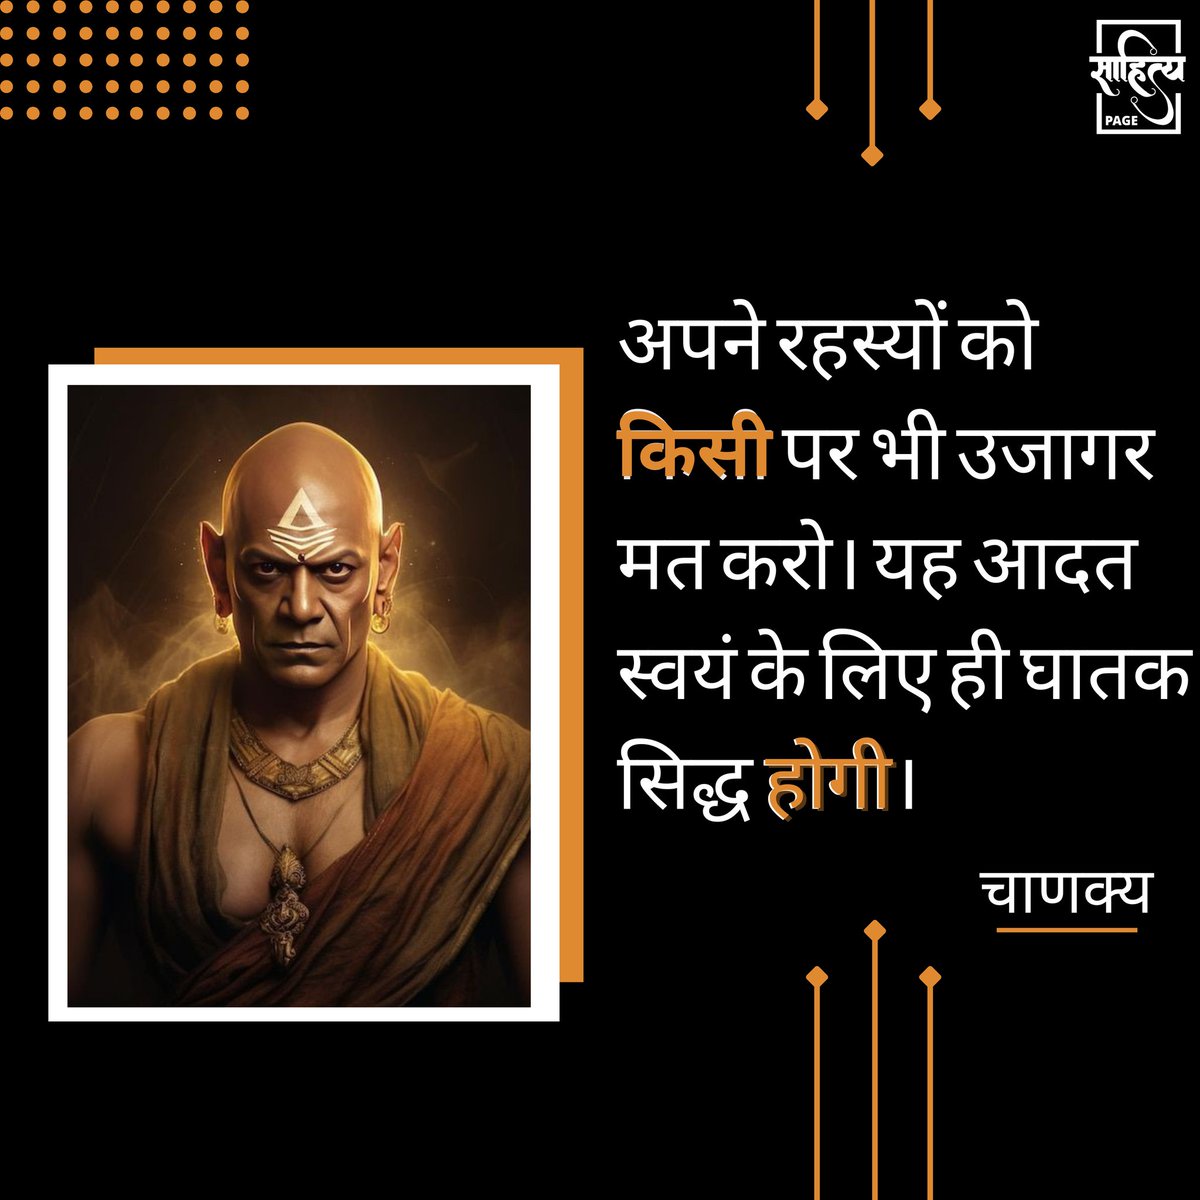 अपने रहस्यों को किसी पर भी उजागर मत करो। यह आदत स्वयं के लिए ही घातक सिद्ध होगी। 

– चाणक्य 
.
#SahityaPage #hindiquotes #chanakya #chanakyaniti #hindi #quotes #motivation #inspiration #suvichar #lifequote